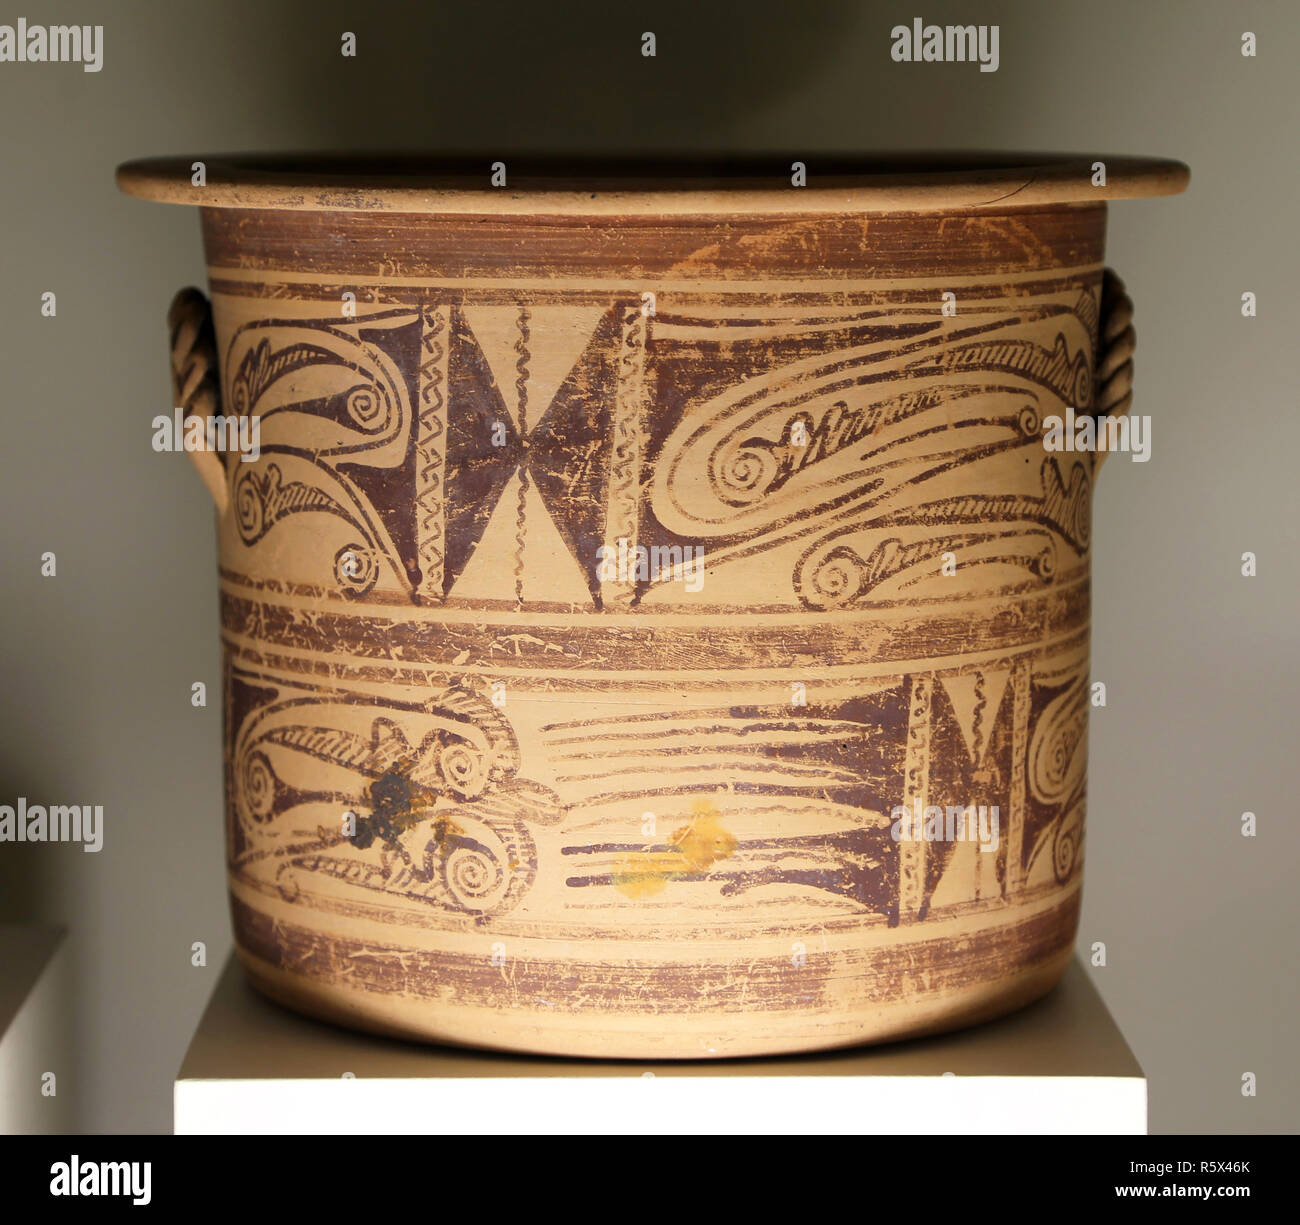 Vase ware ibérique Kalathos (3e siècle avant J.-C.), roue-faites de la poterie, la culture ibérique, au sud-est de la péninsule ibérique, l'Espagne. Banque D'Images